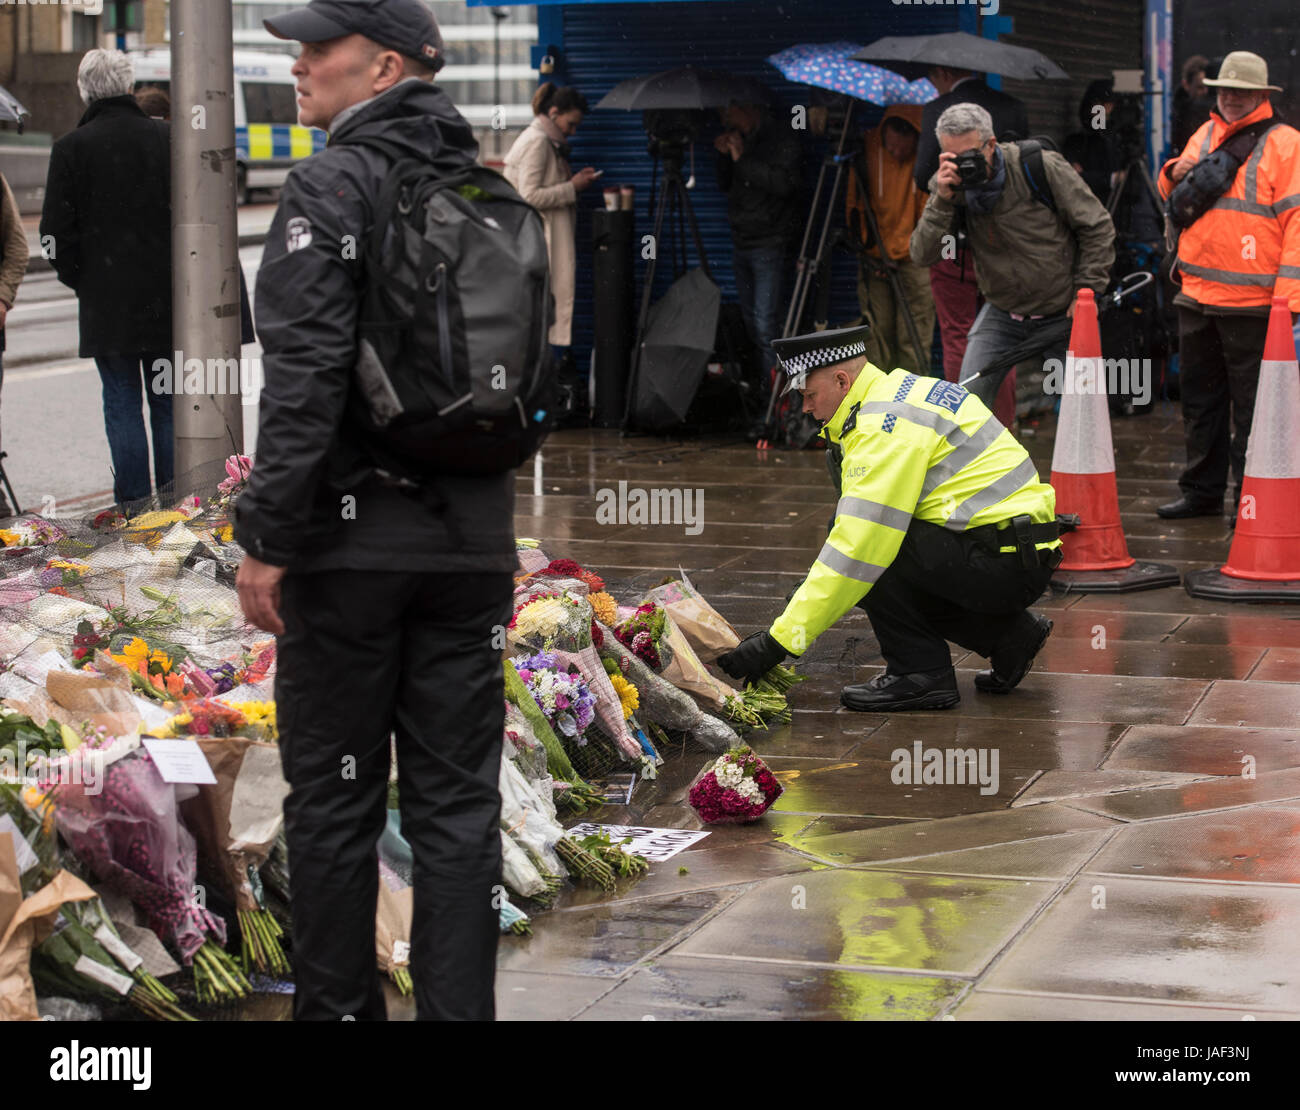 Londra, Regno Unito. Il 6 giugno, 2017. Un funzionario di polizia luoghi fiori presso il memoriale di fortuna, dopo gli attentati terroristici a Londra London Bridge, dopo i due minuti di silenzio Credito: Ian Davidson/Alamy Live News Foto Stock